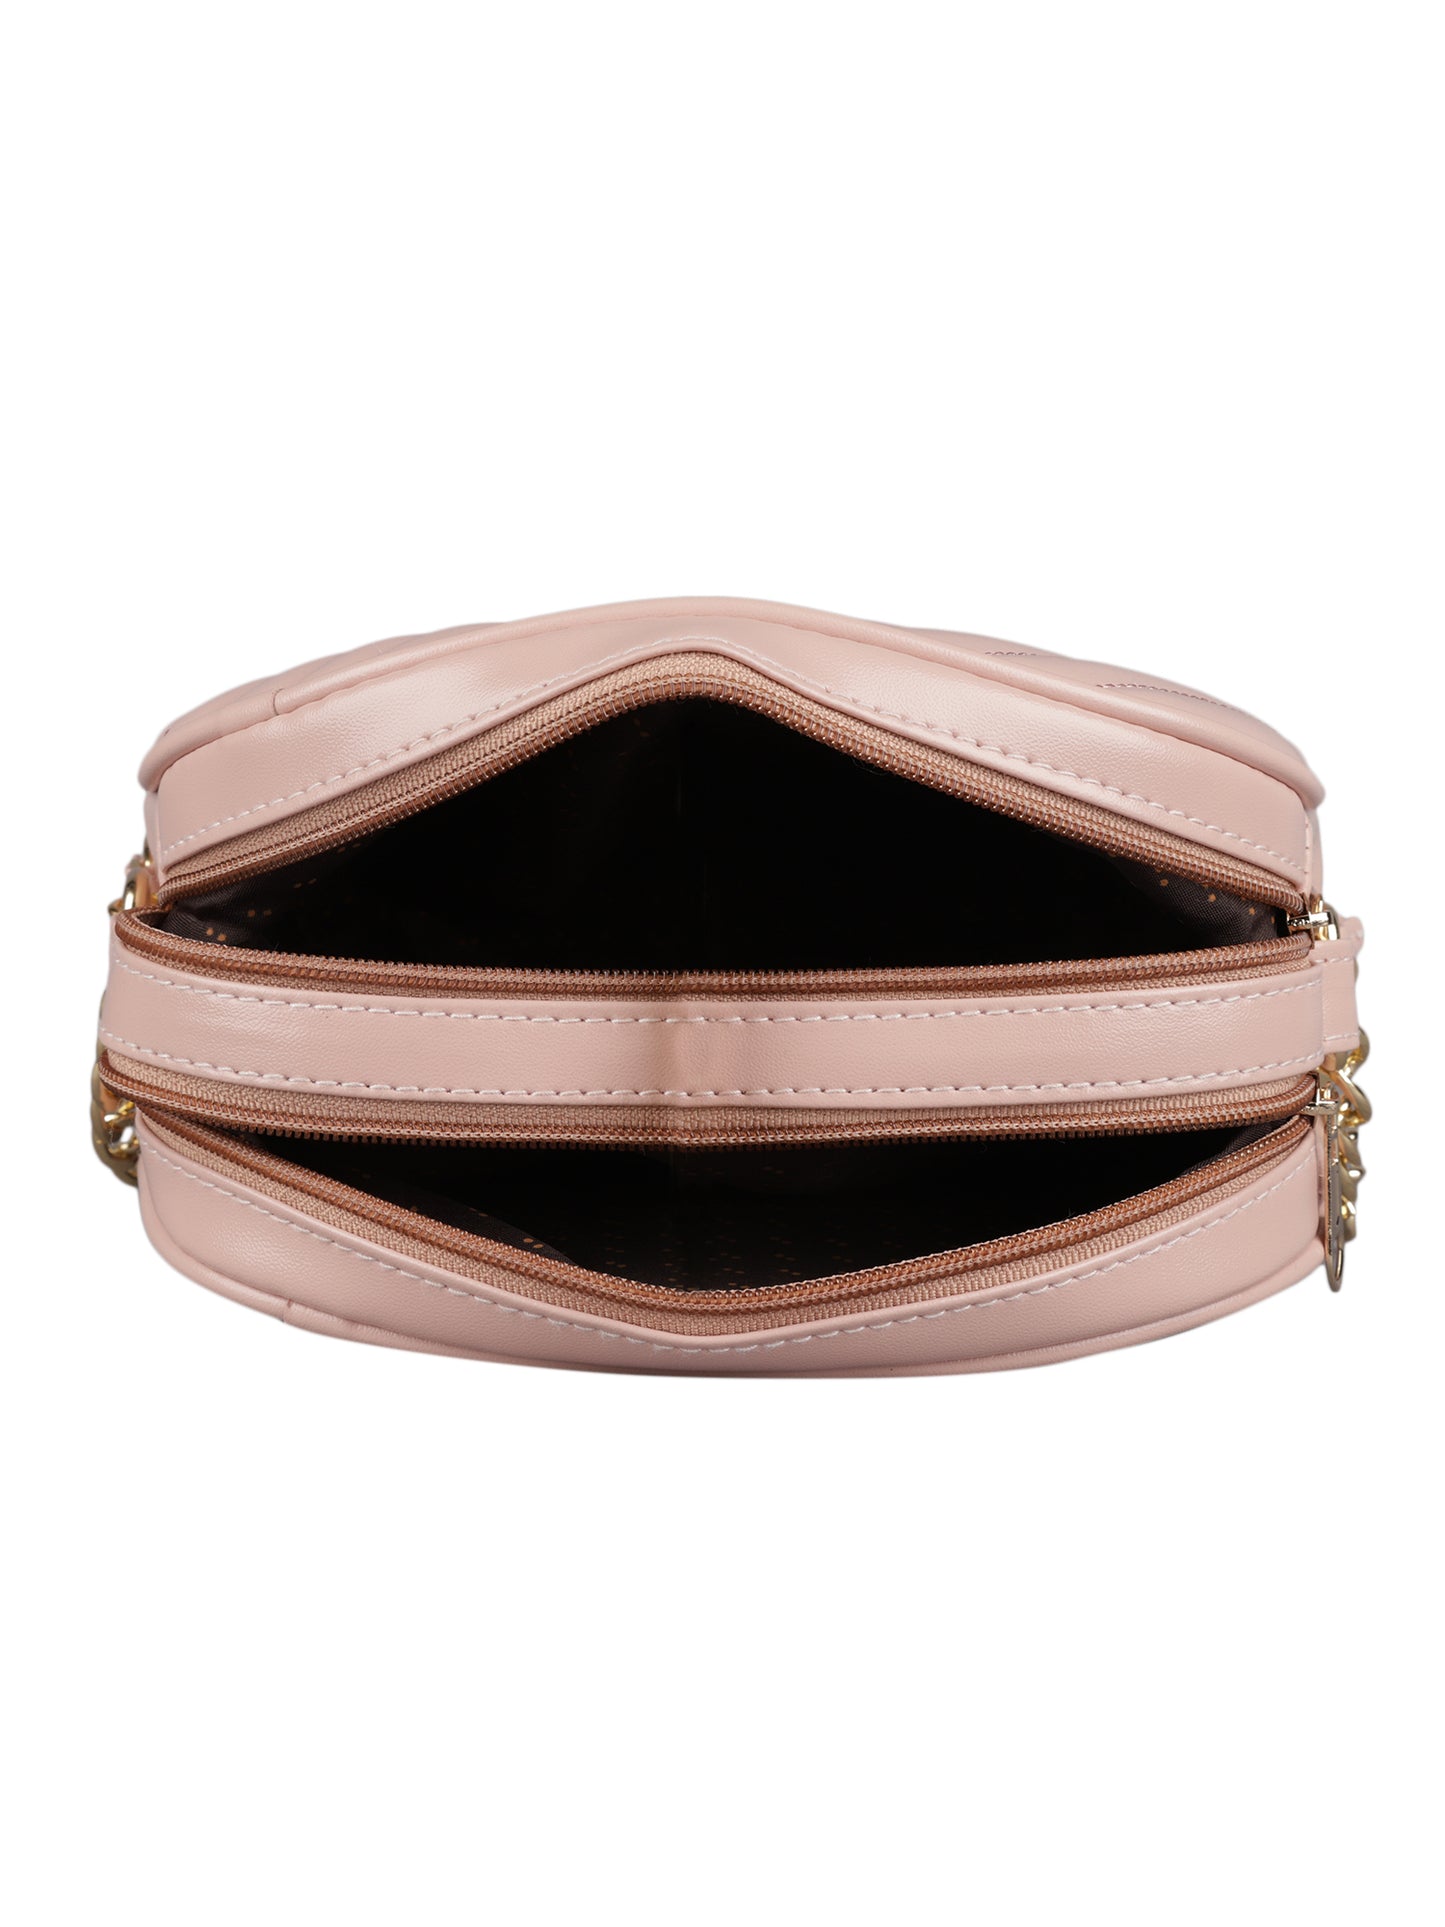 MINI WESST Women's Pink Handbags(MWHB036PK)